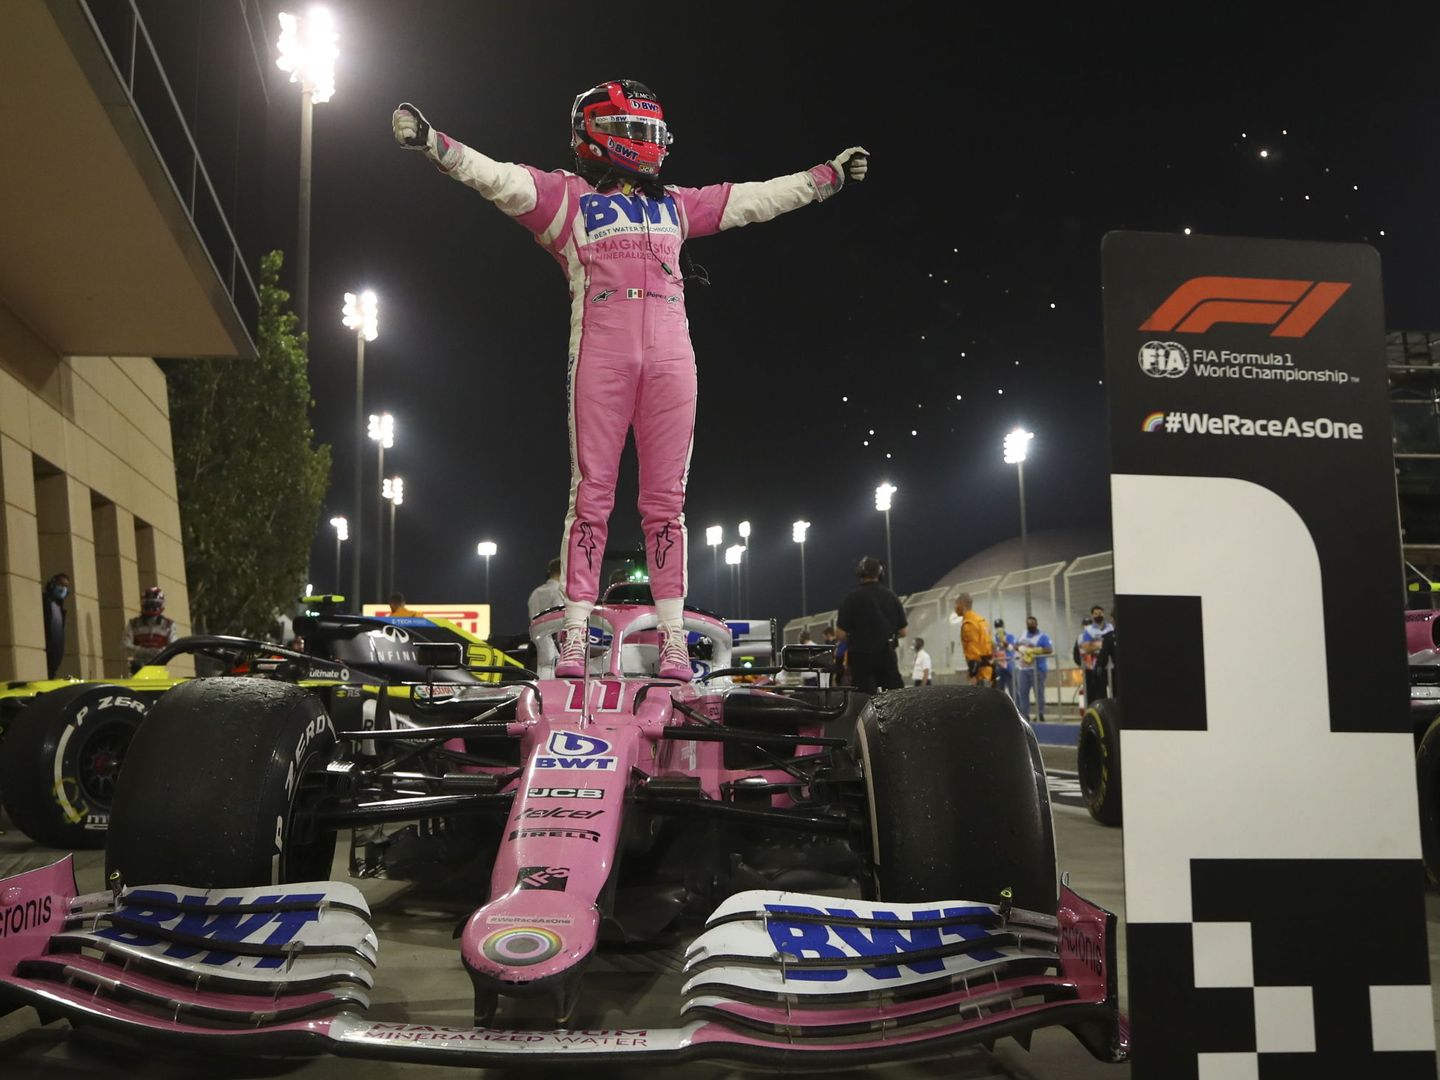 El piloto mexicano ha vivido un año increíble y azaroso, desde quedarse sin volante, su primera victoria y su fichaje por Red Bull